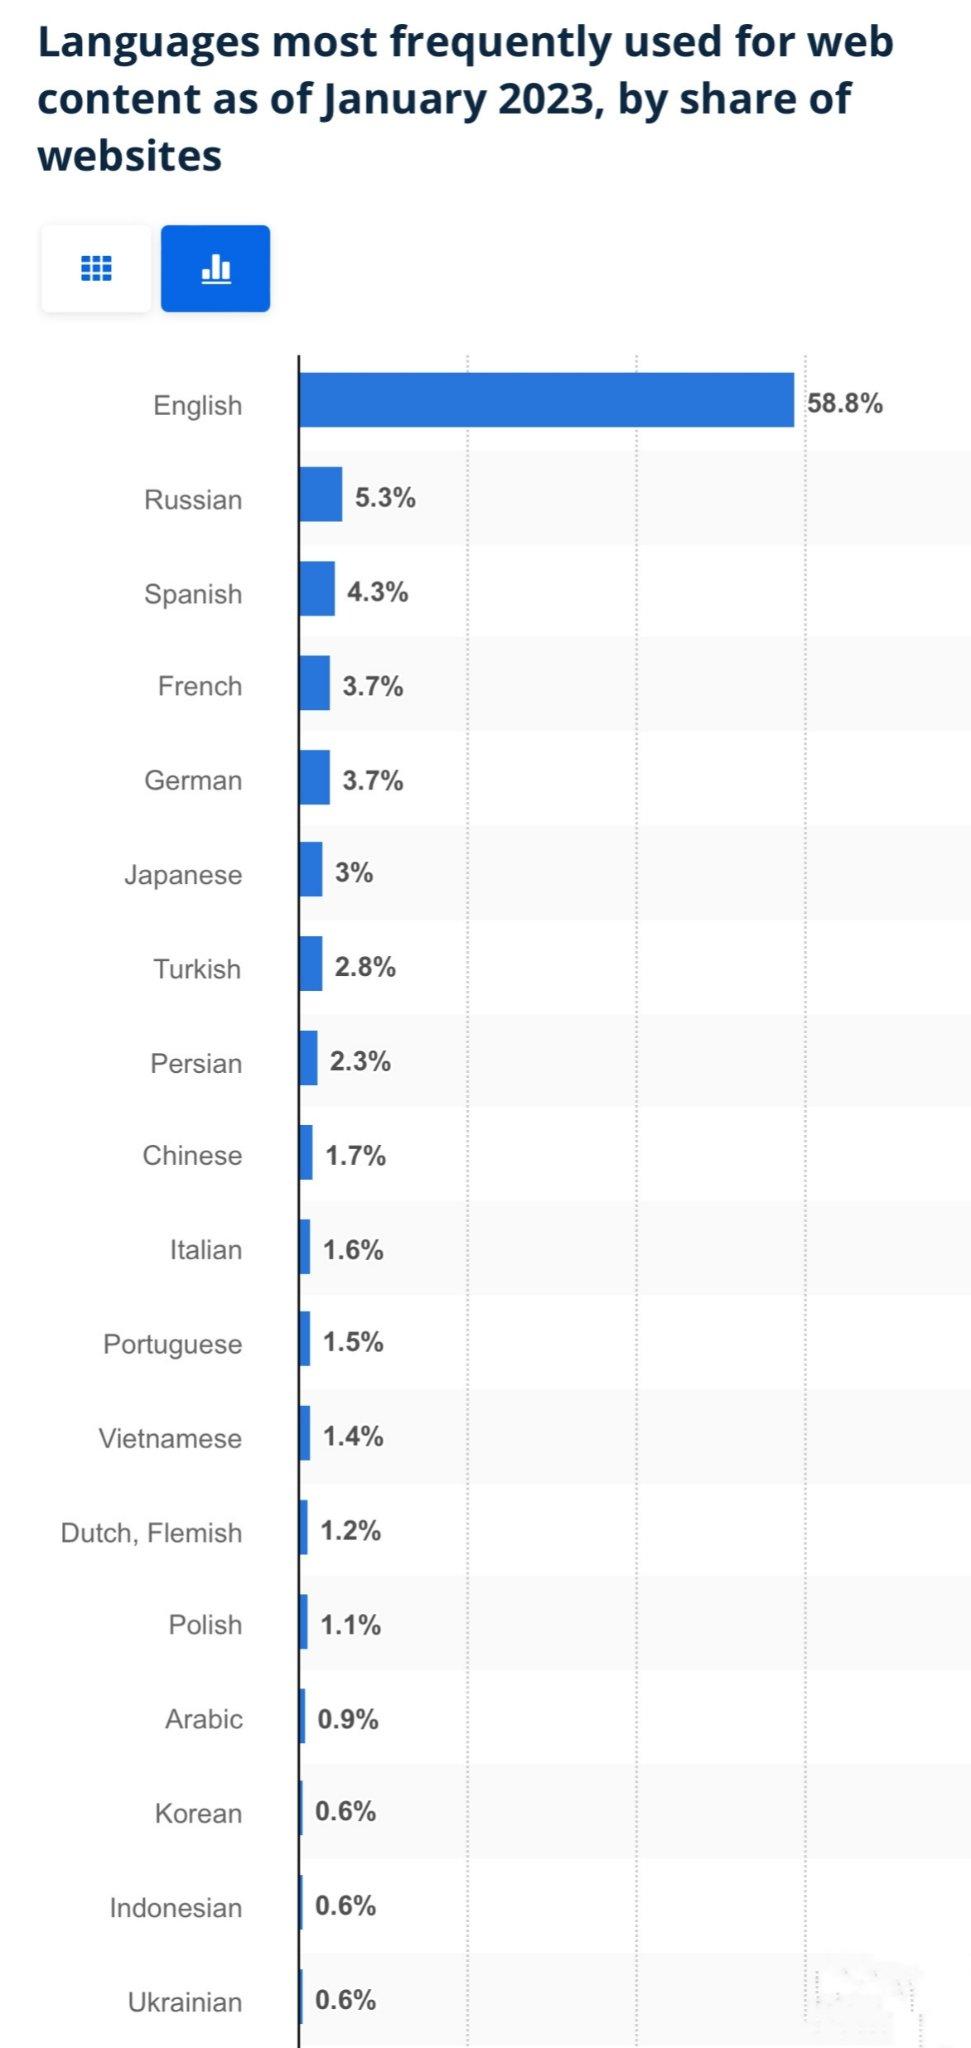 全世界互联网内容，英语还是占一多半，达58.8%